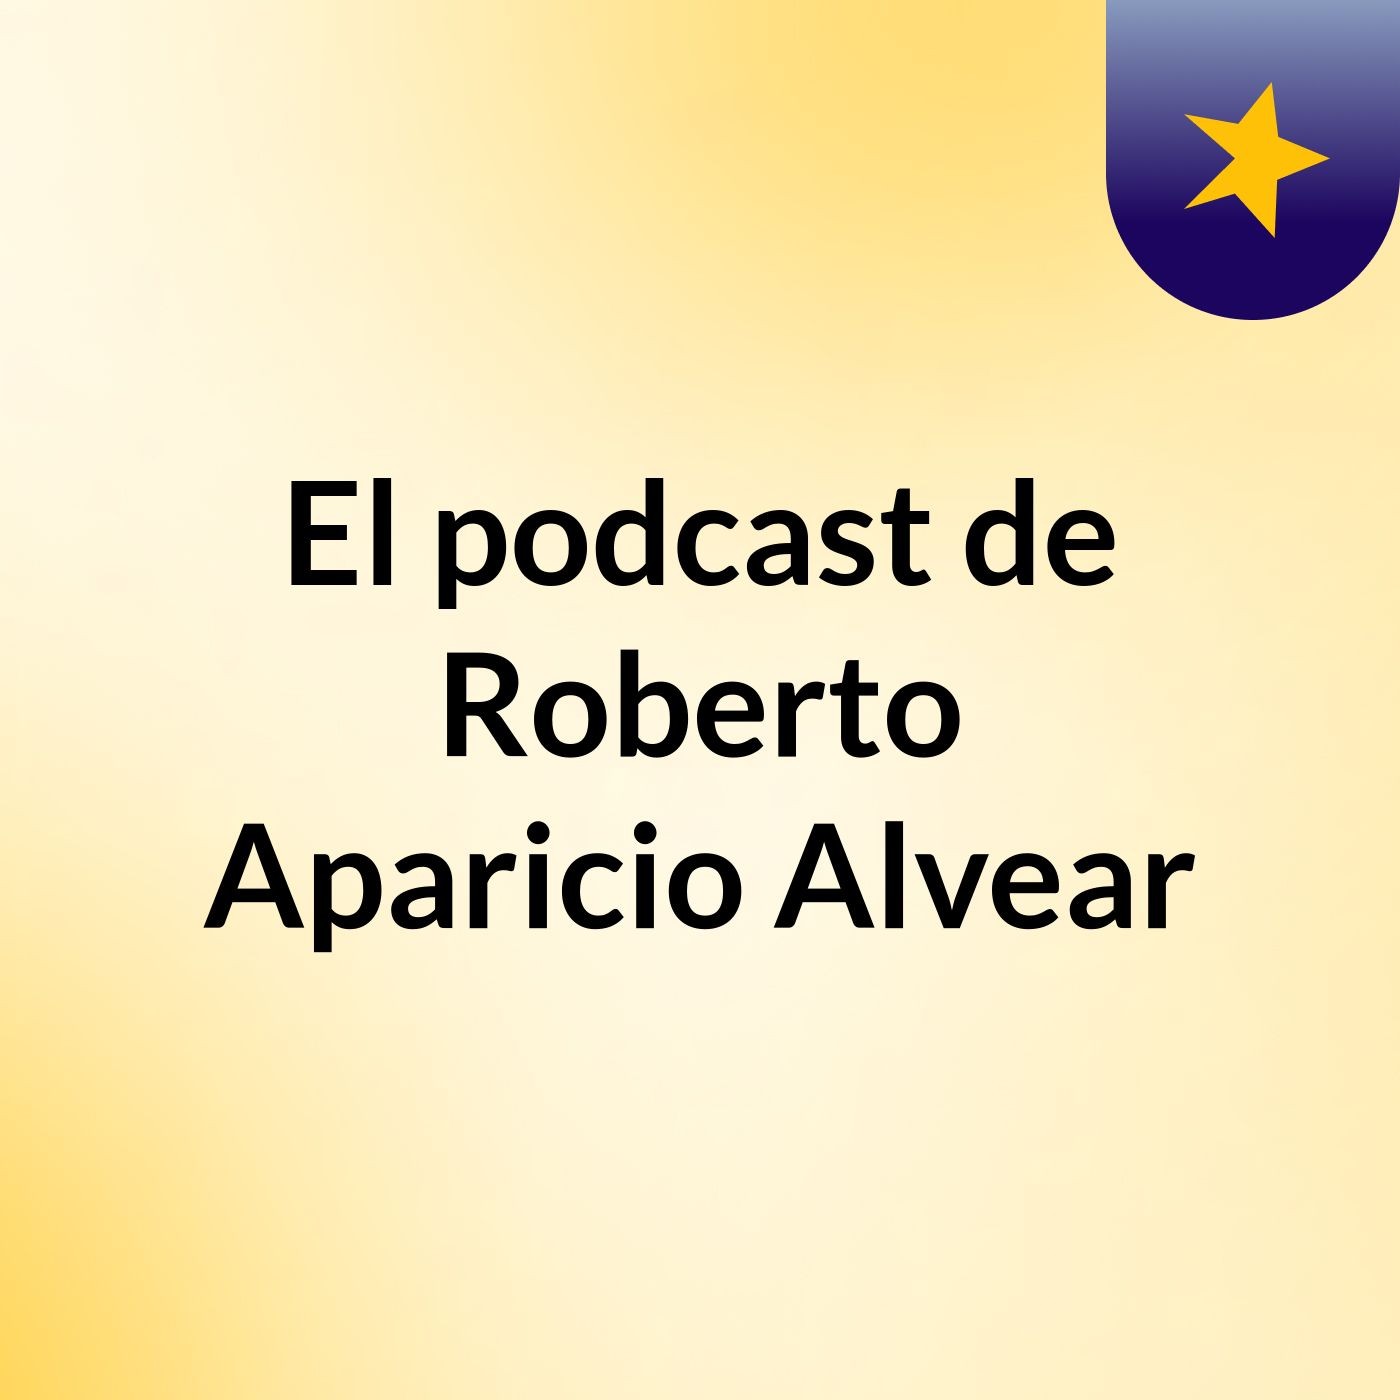 El podcast de Roberto Aparicio Alvear